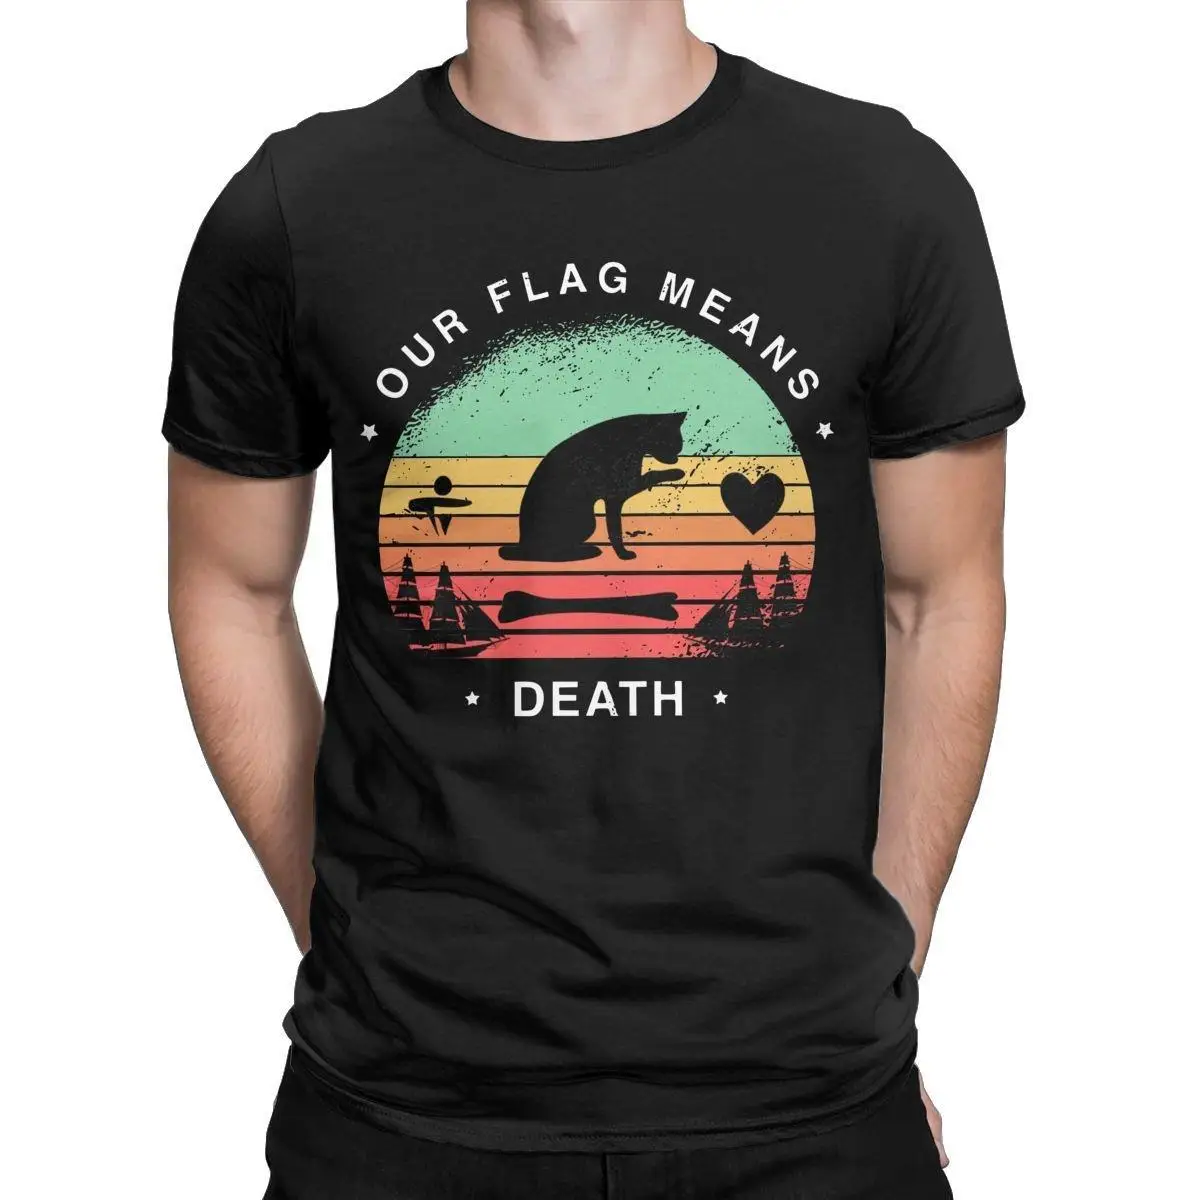 Our Flag Means Death Retro Men T Shirt Flag with Cat Vintage Tees Short Sleeve Crewneck T-Shirt 100% Cotton Plus Size Clothing